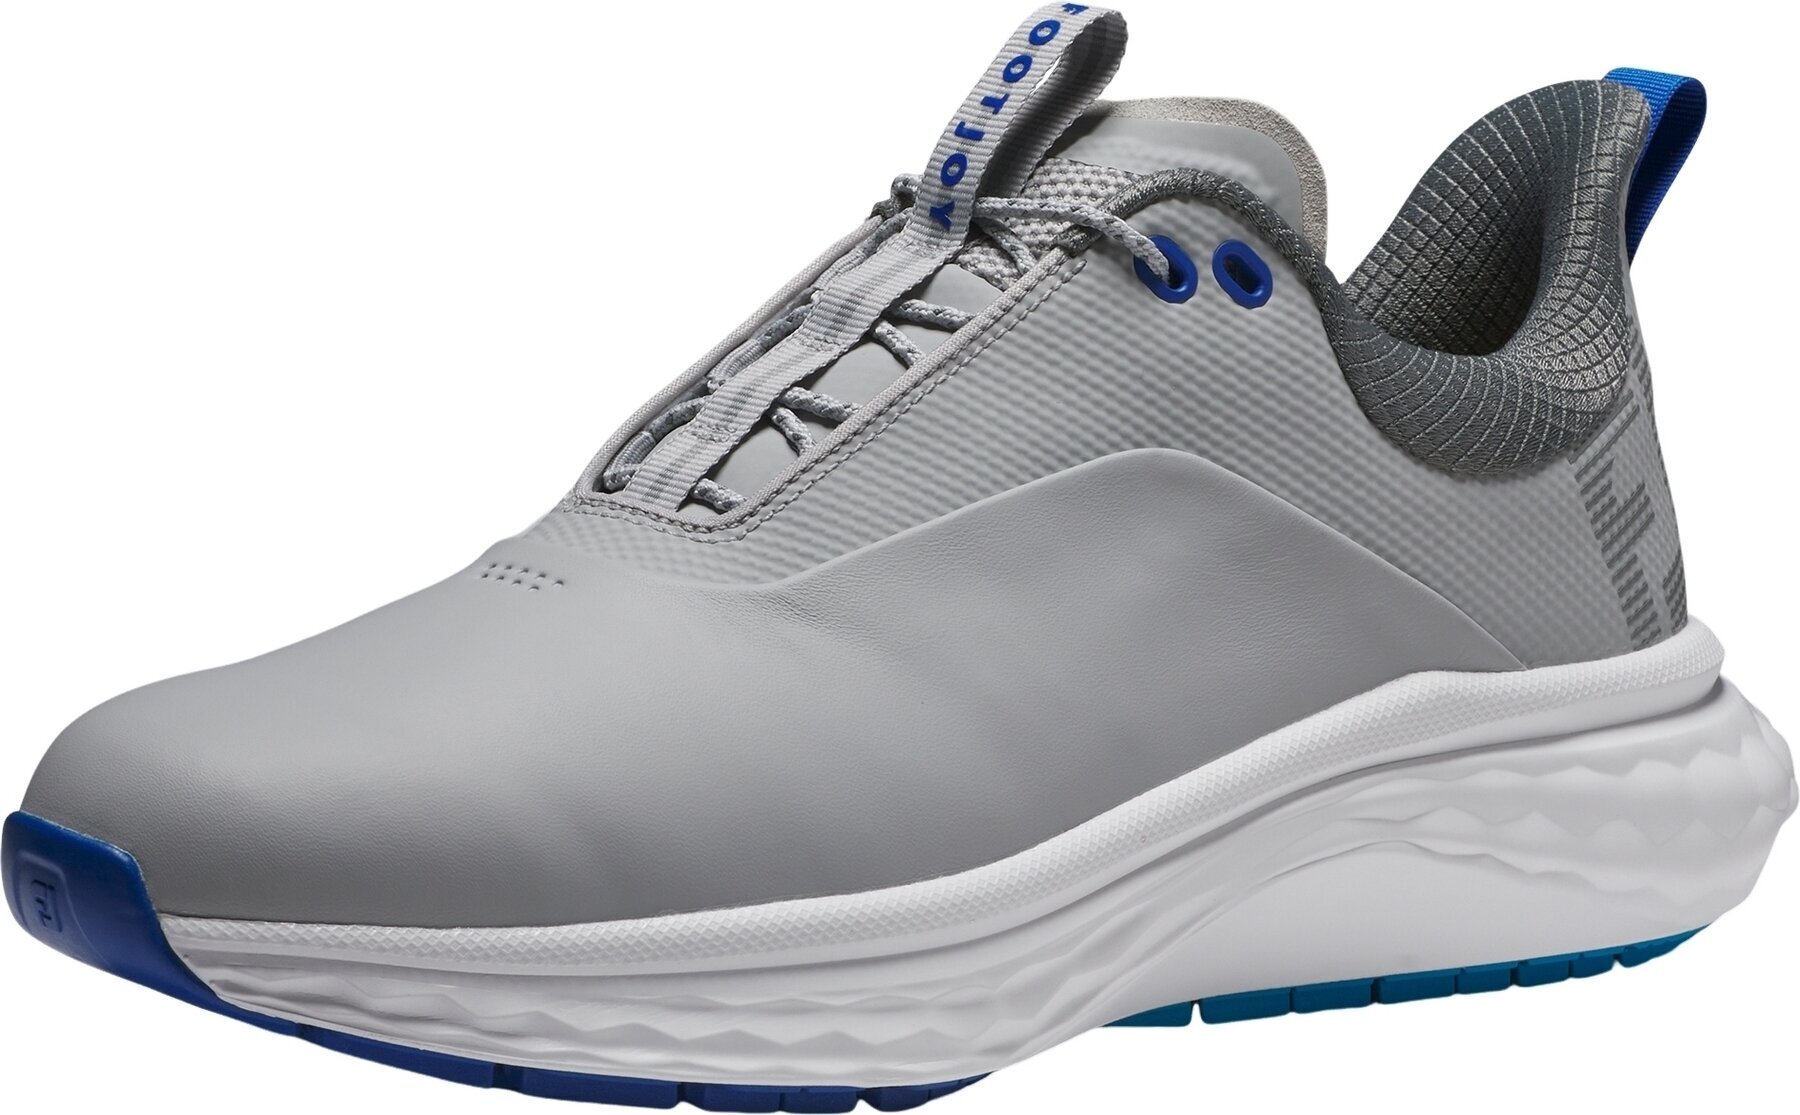 Miesten golfkengät Footjoy Quantum Mens Golf Shoes Grey/White/Blue 42